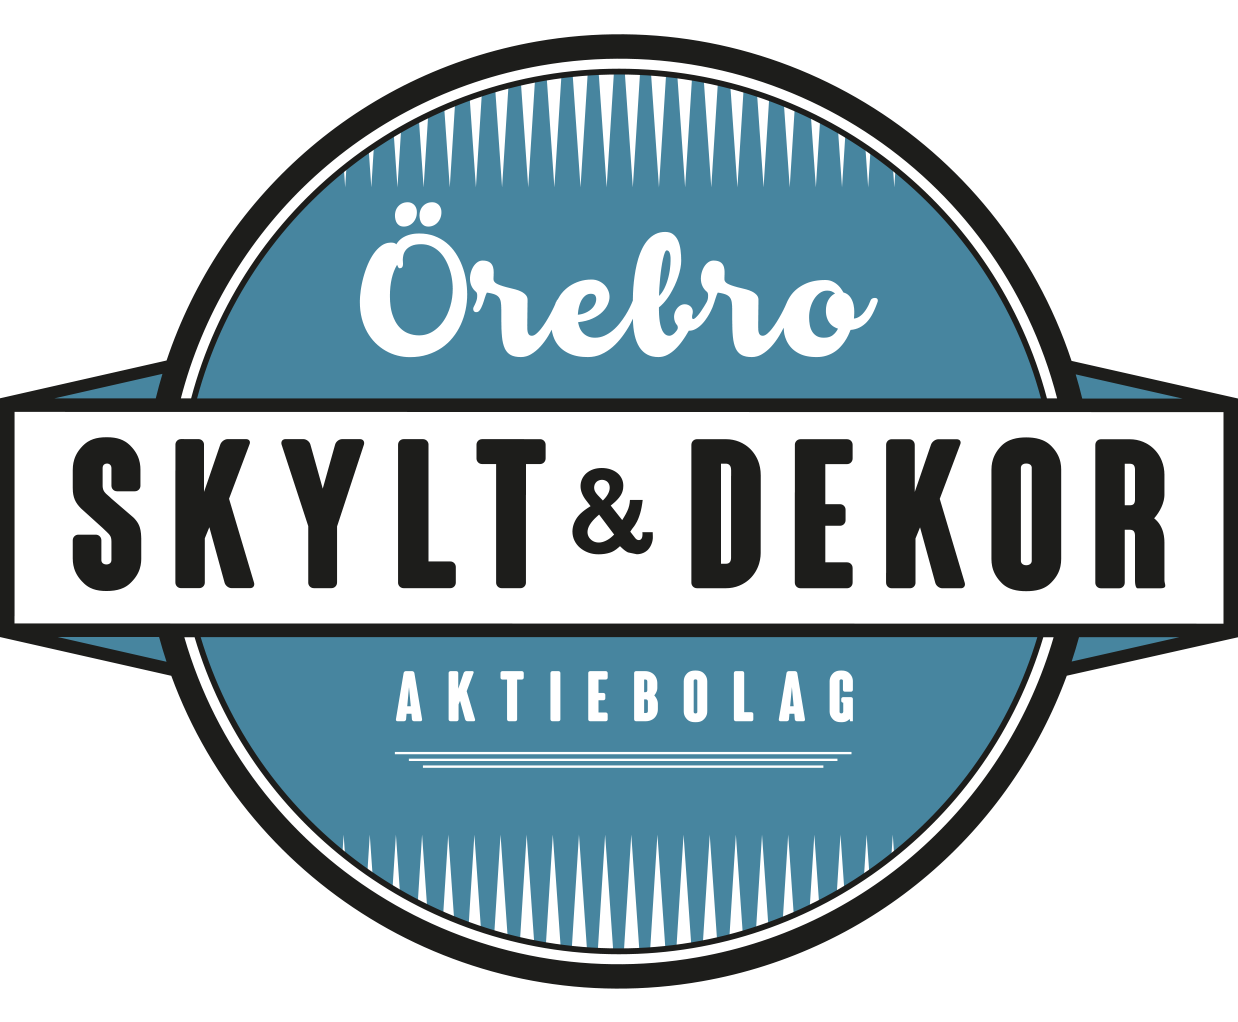 Örebro Skylt & Dekor logo.png